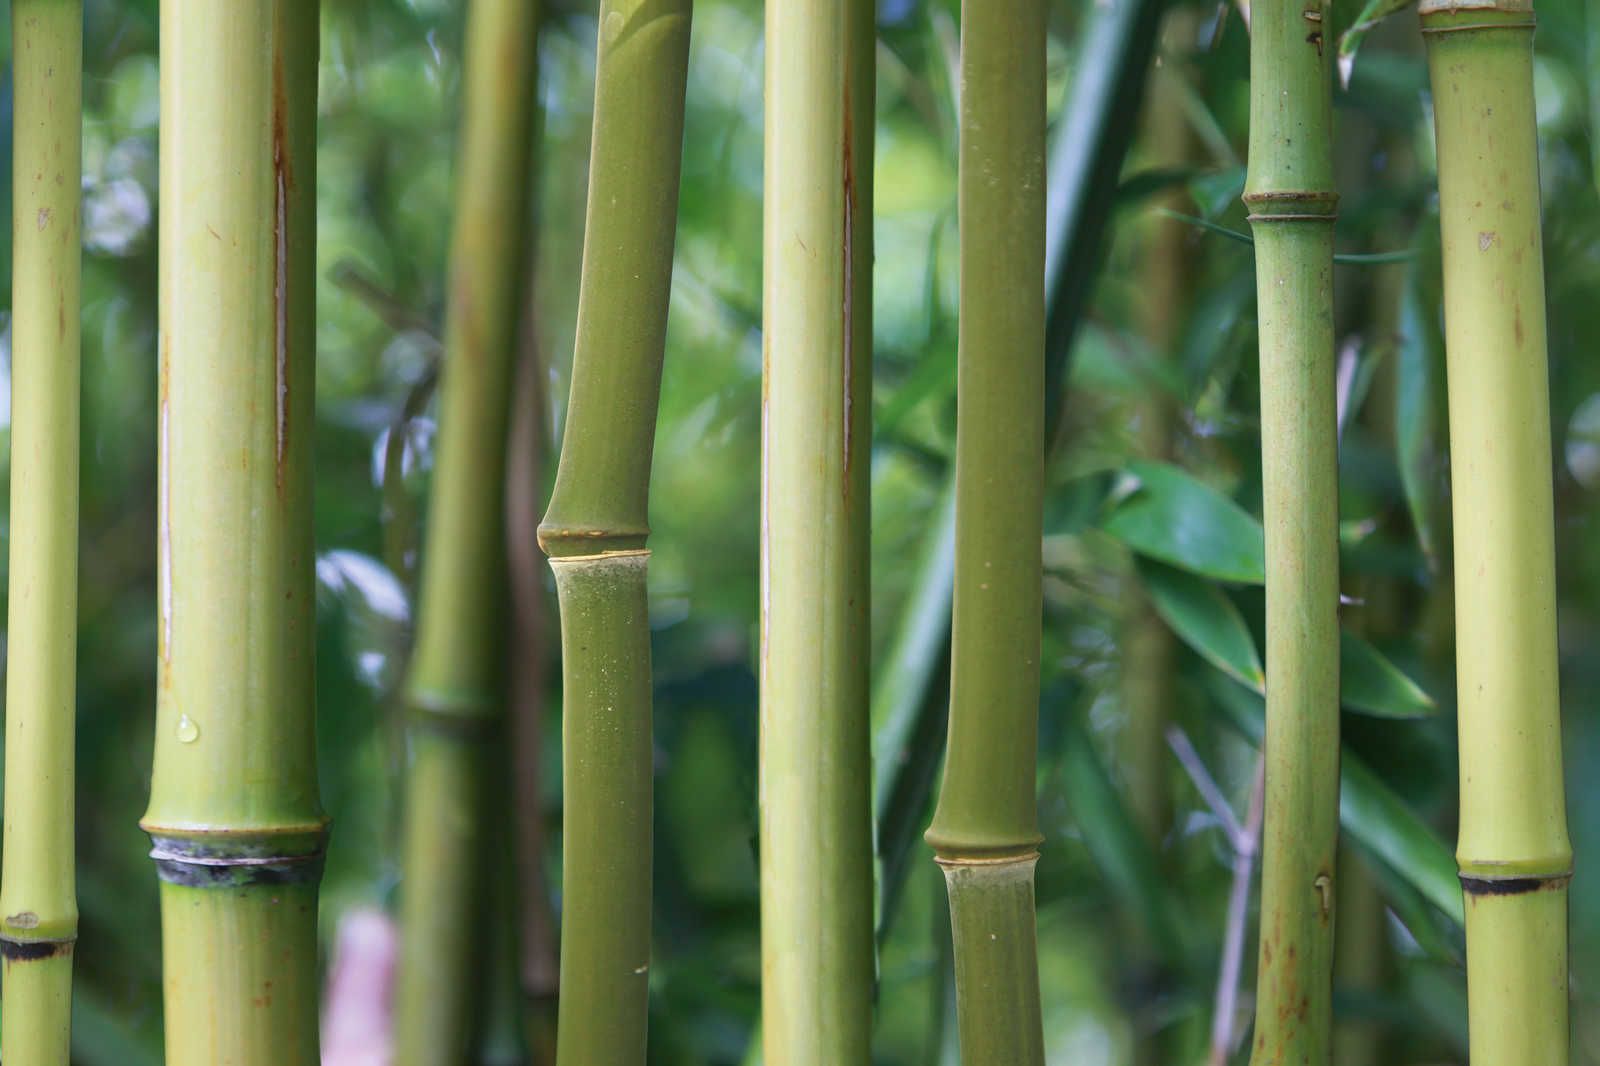             Cuadro en lienzo Bambú Bosque de bambú con vista detallada - 0,90 m x 0,60 m
        